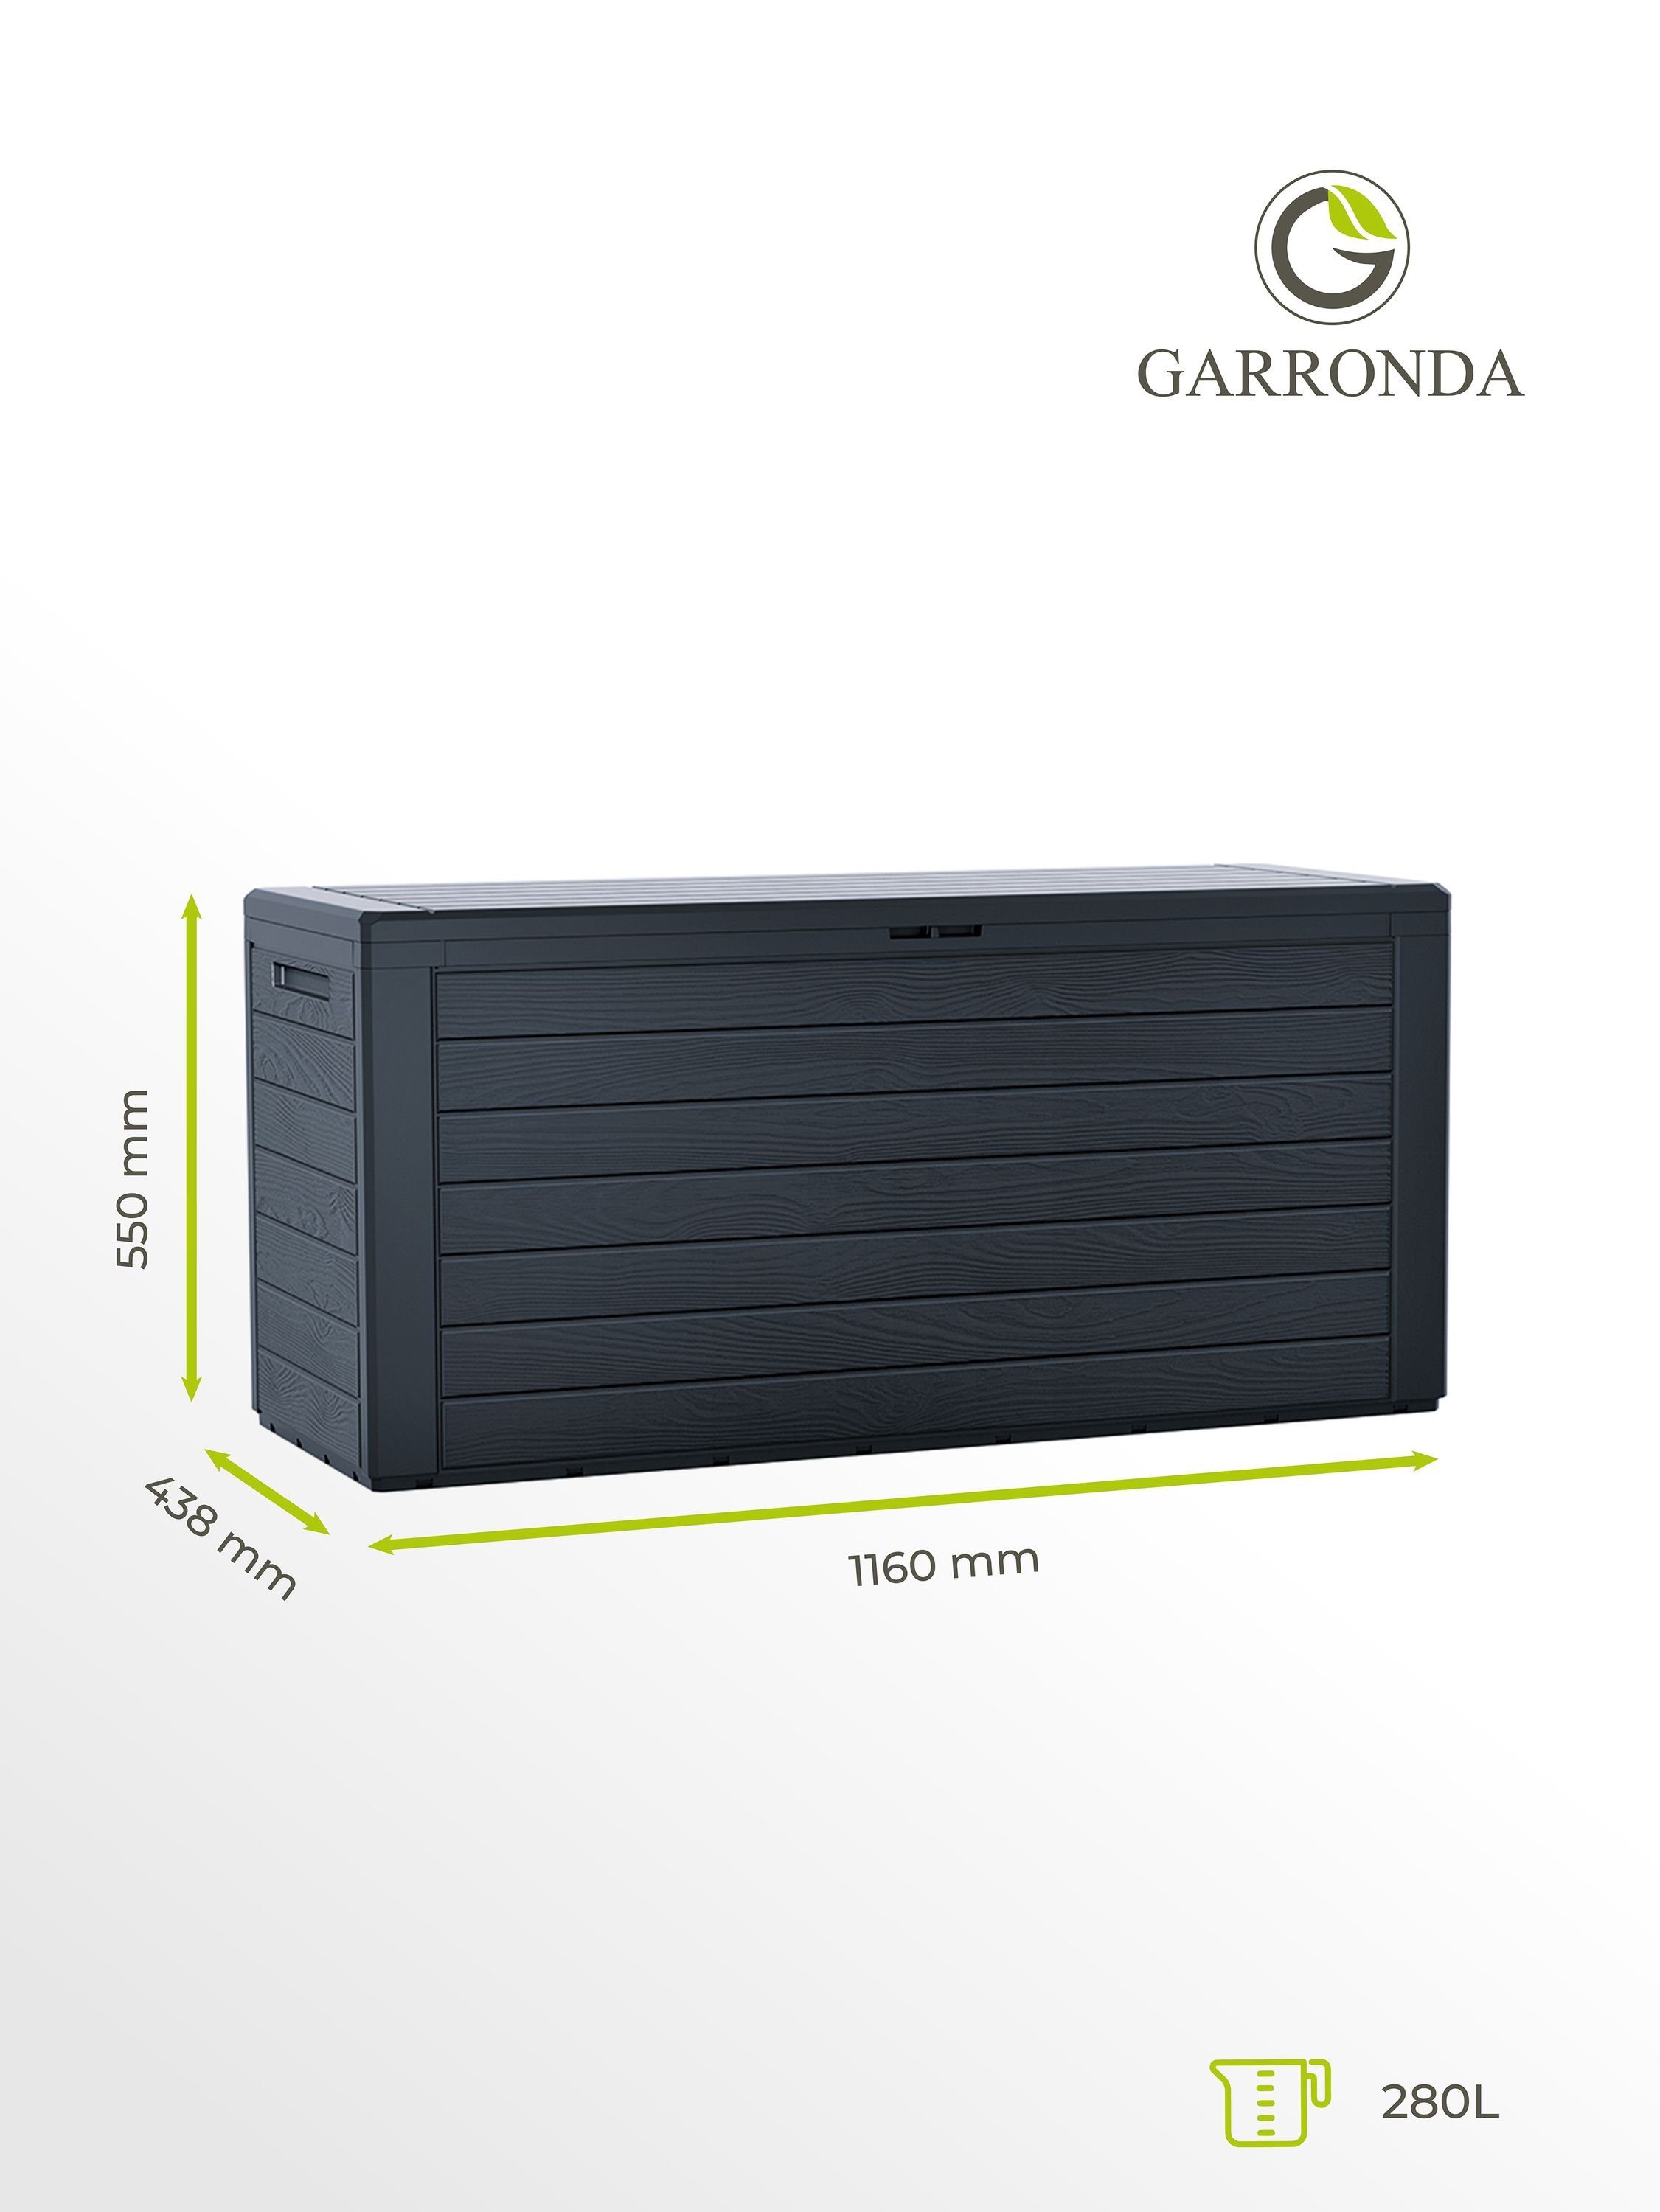 Garronda Kissenbox 280L Gartenbox Gartenruhe GD-0050 Gerätebox Anthrazit